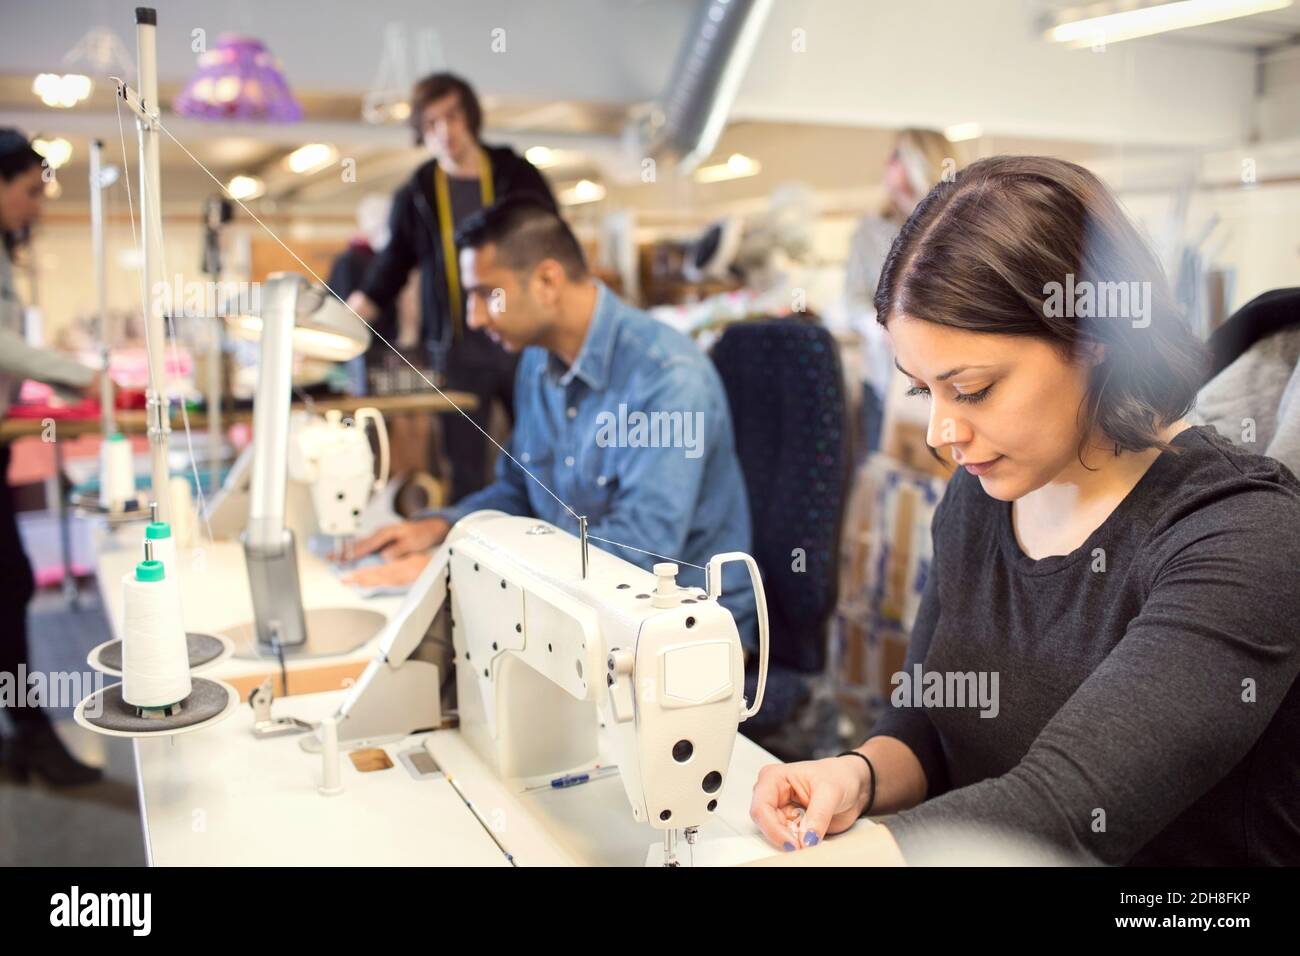 Femme concentrée coudre des vêtements pendant que des bénévoles travaillent à l'atelier Banque D'Images